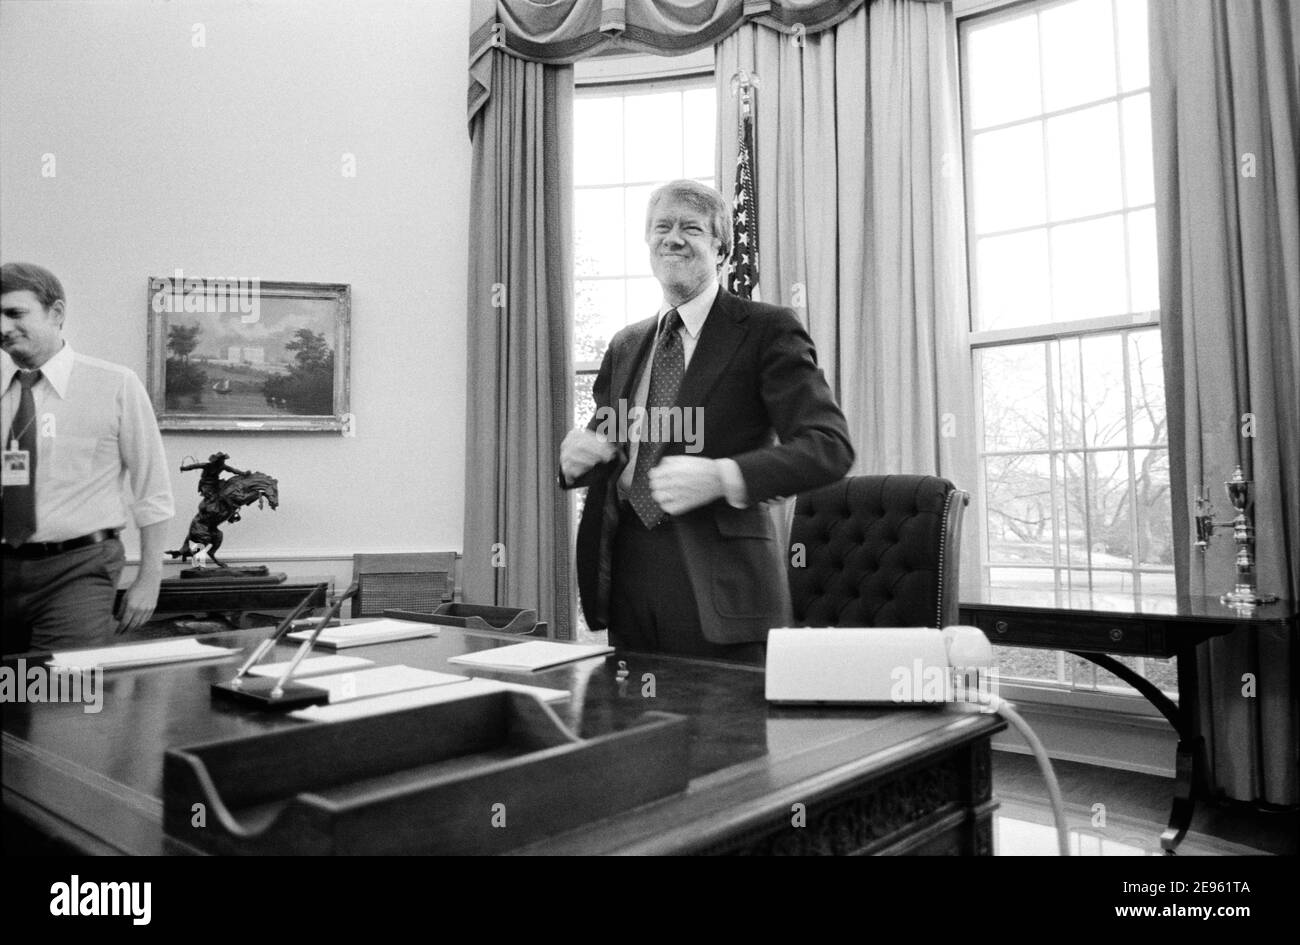 US-Präsident Jimmy Carter steht hinter seinem Schreibtisch im Oval Office des Weißen Hauses, Washington, D.C., USA, Marion S. Trikosko, 2. Februar 1977 Stockfoto